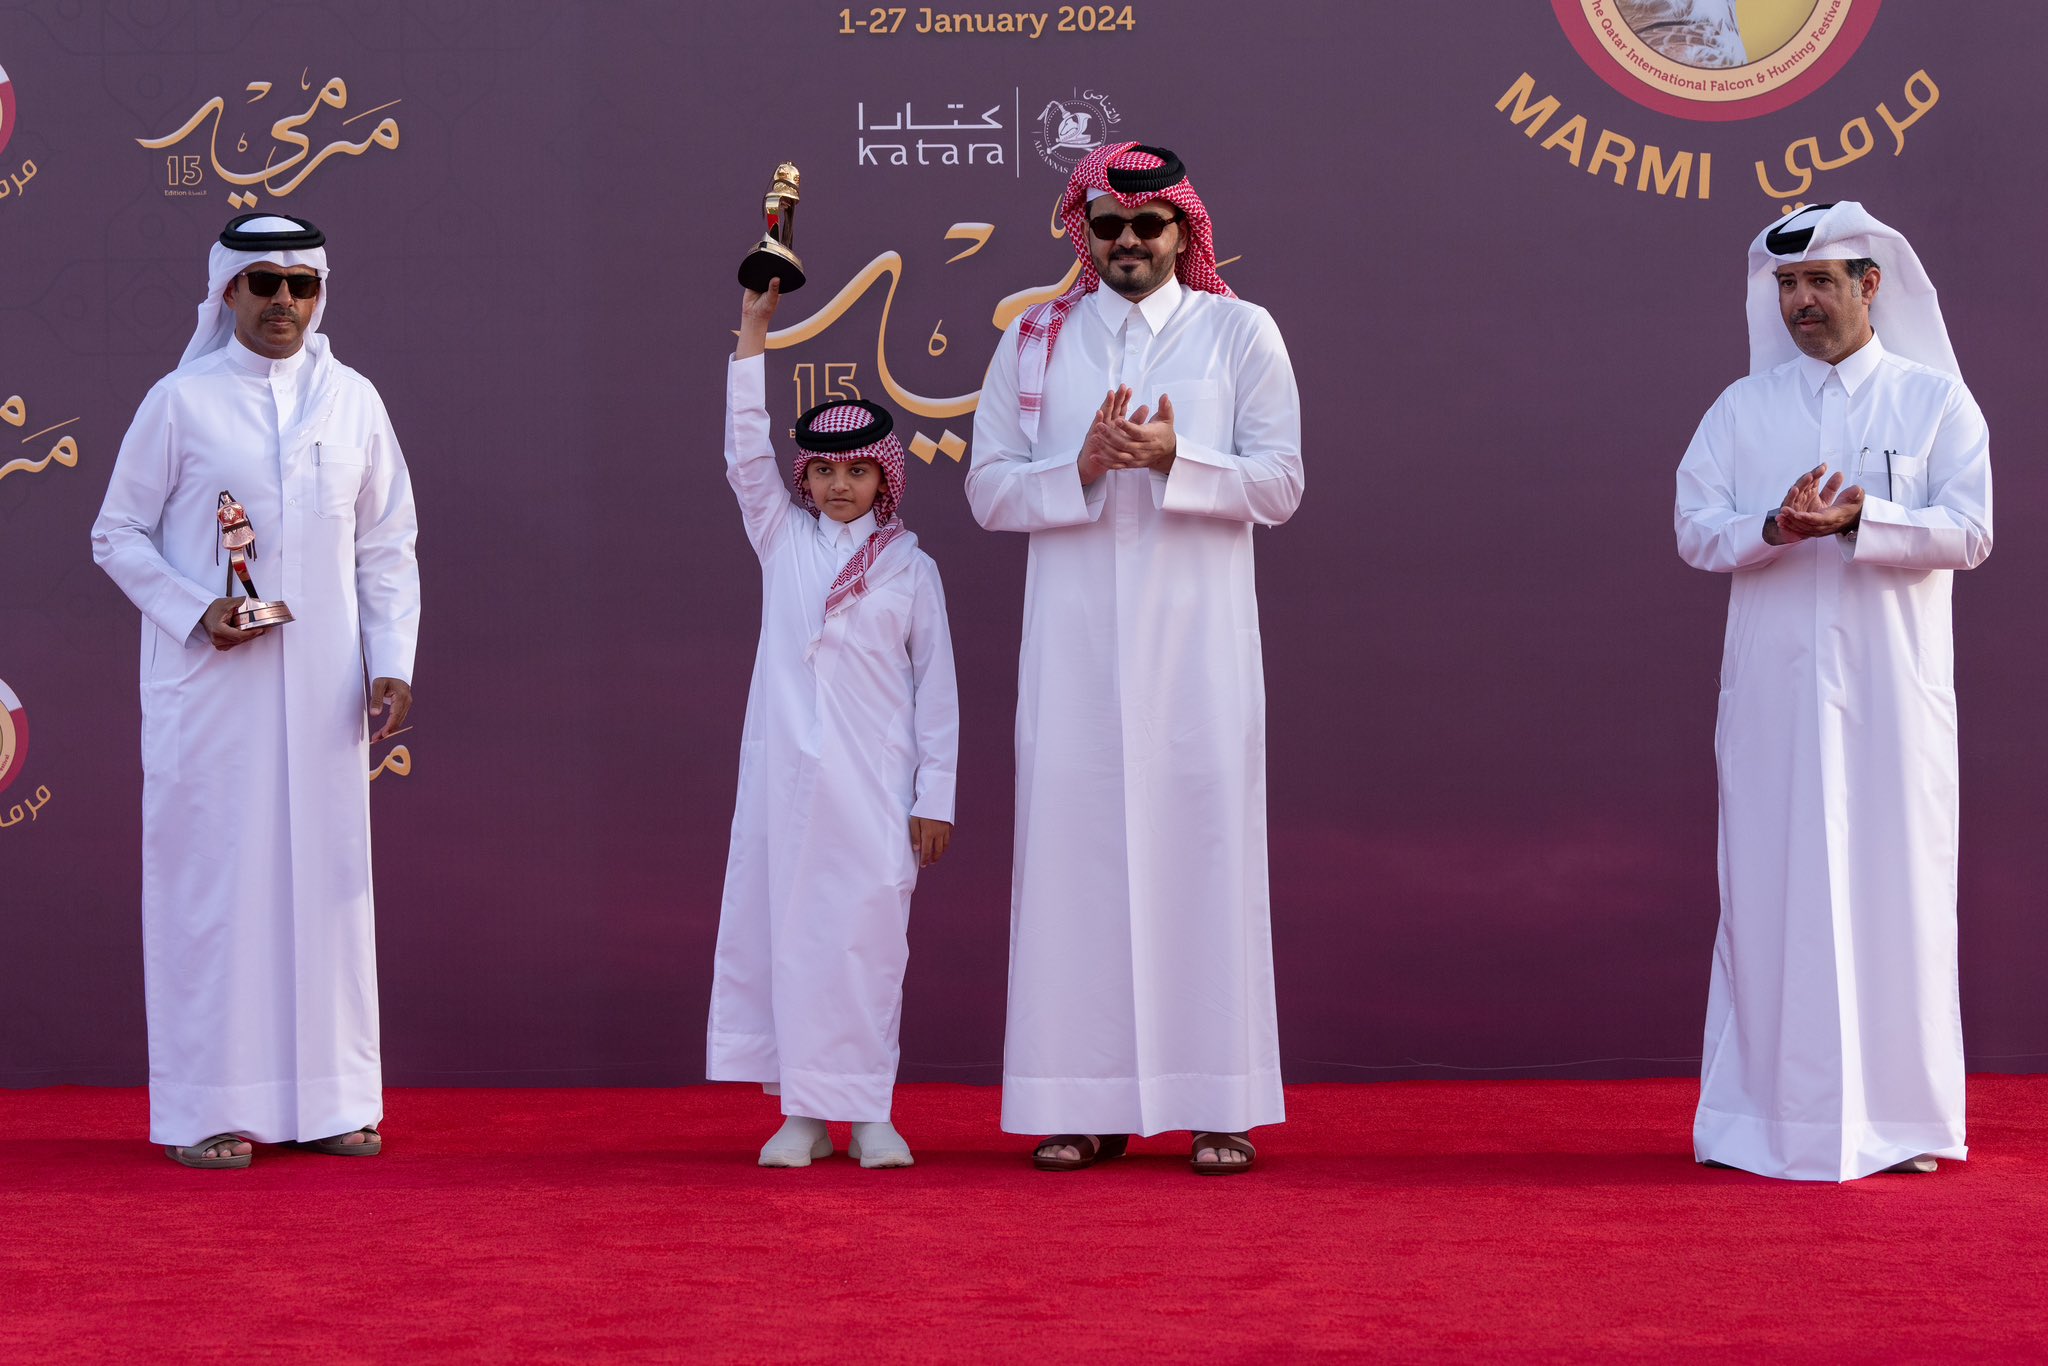 Sheikh Joaan Crowns Al Mazayen Winners at Marmi 2024 Conclusion